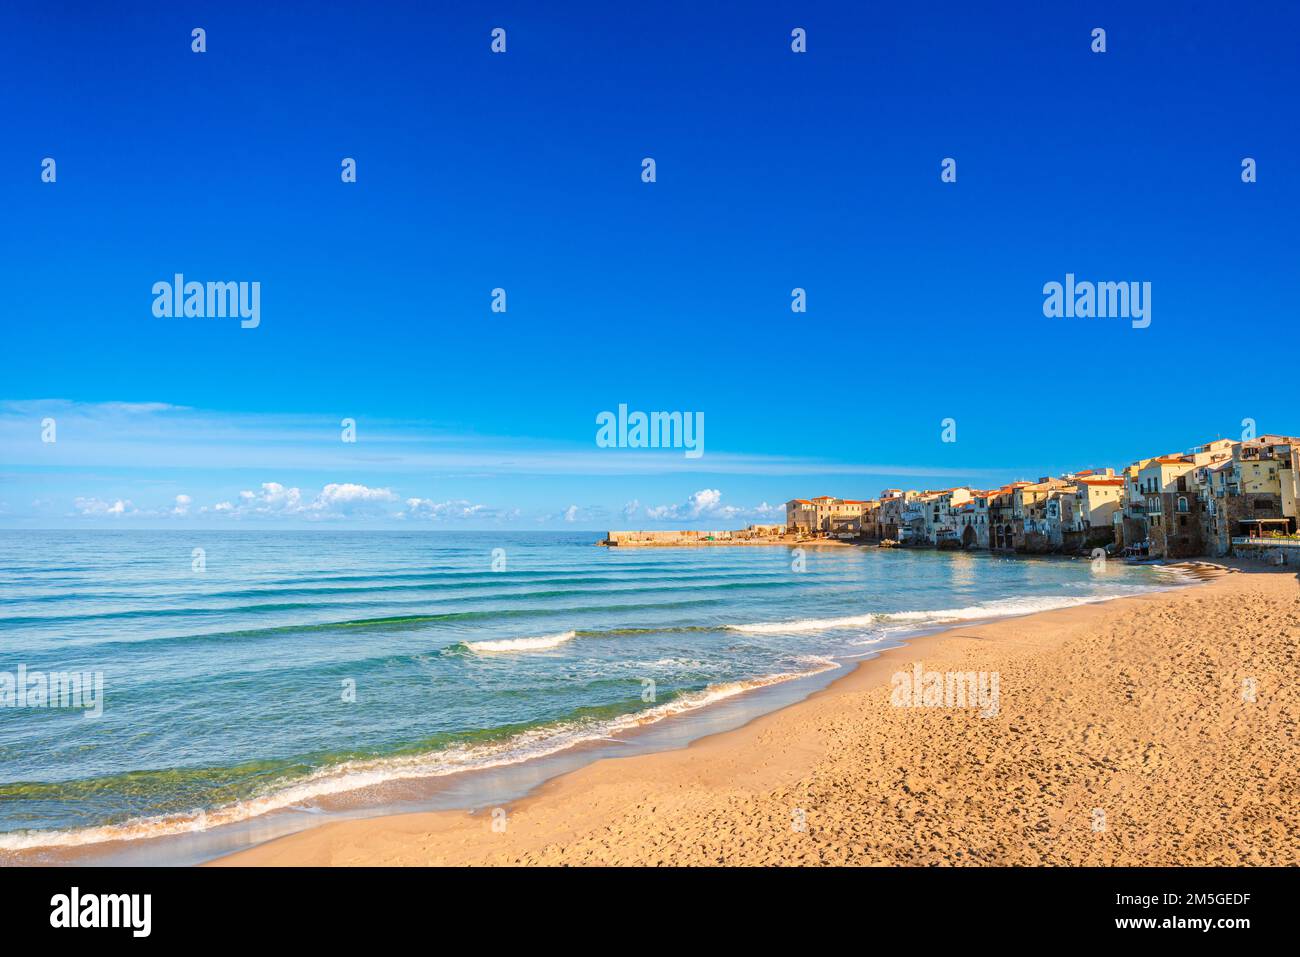 Vue panoramique sur la plage de Cefalu sans personne en Sicile, Italie Banque D'Images